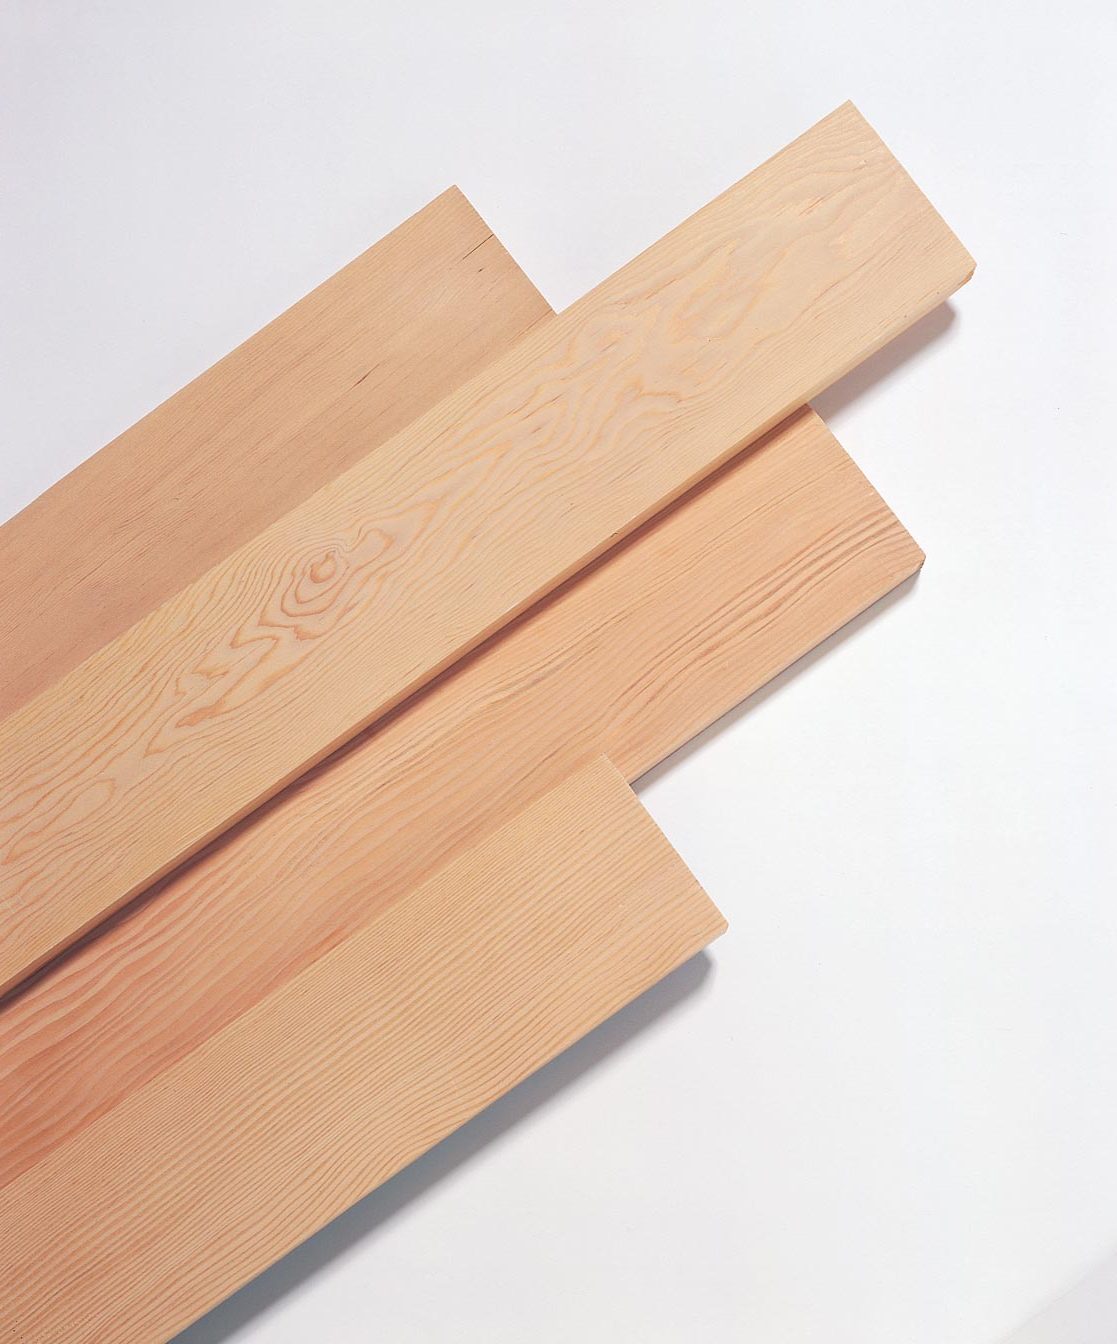 Canadian Wood – Cầu nối đưa gỗ mềm Canada đến tay nhà sản xuất Việt - 9